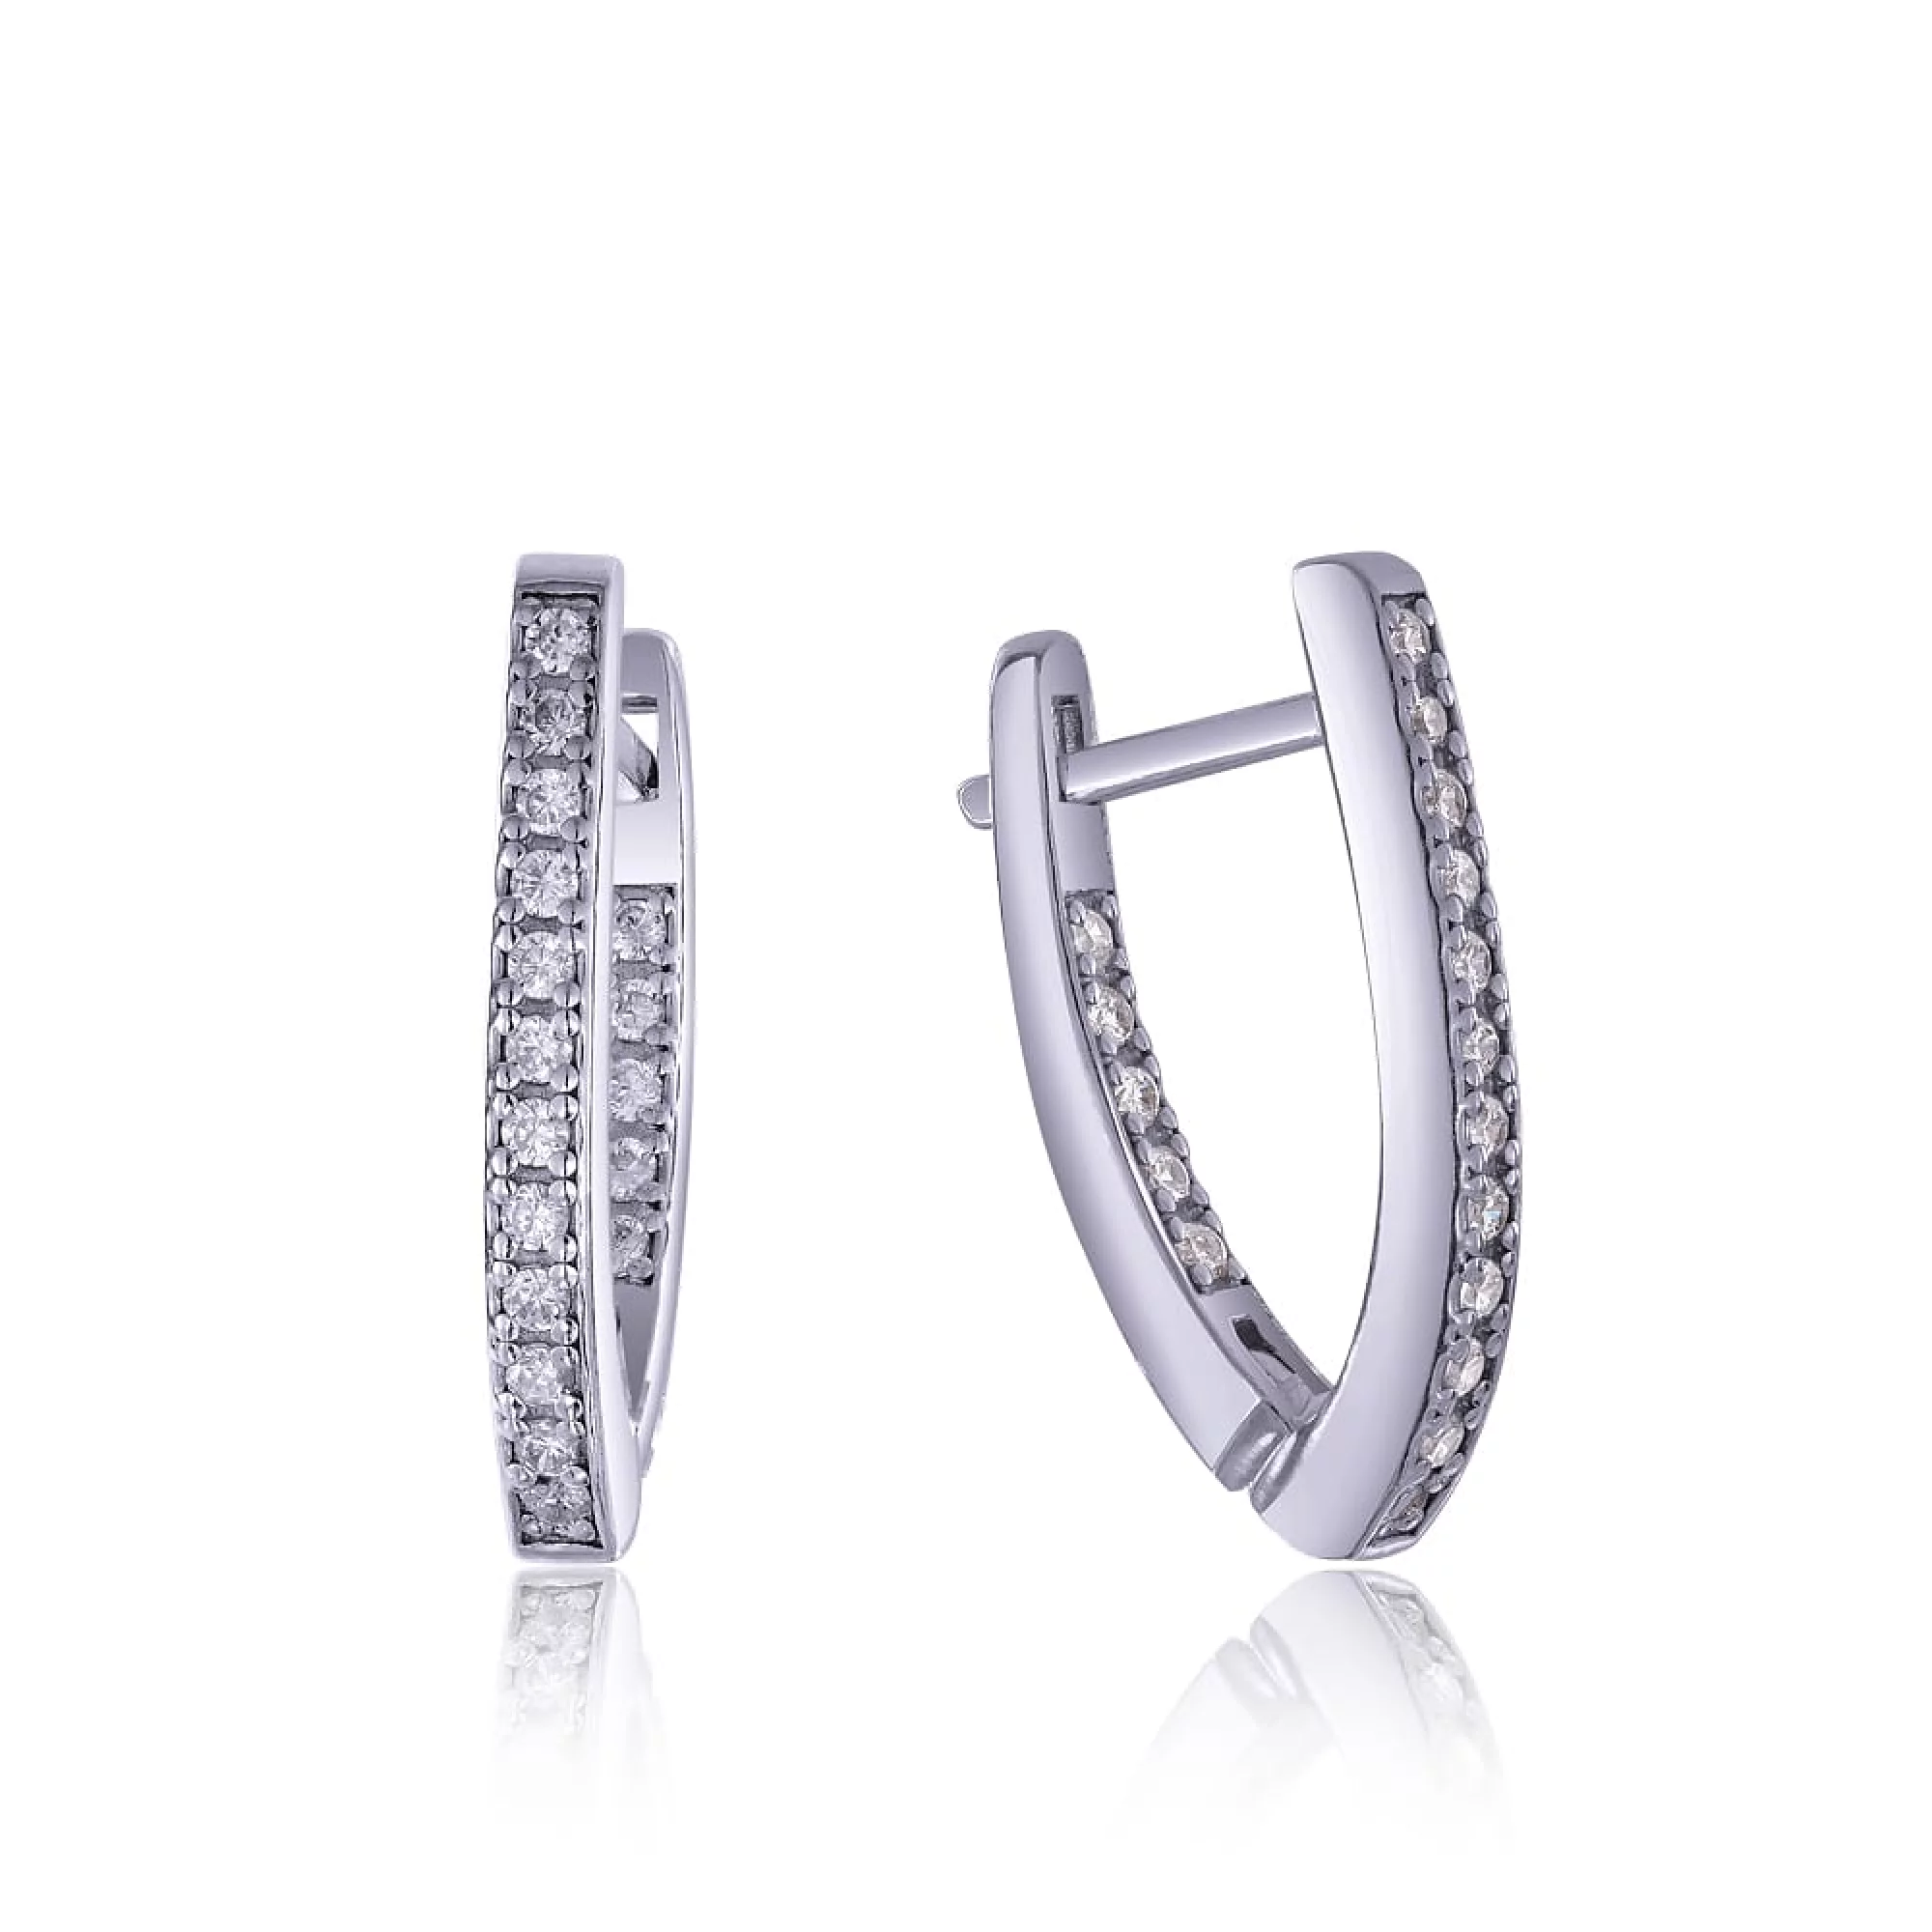 Срібні сережки з цирконієм - 411565 – зображення 1